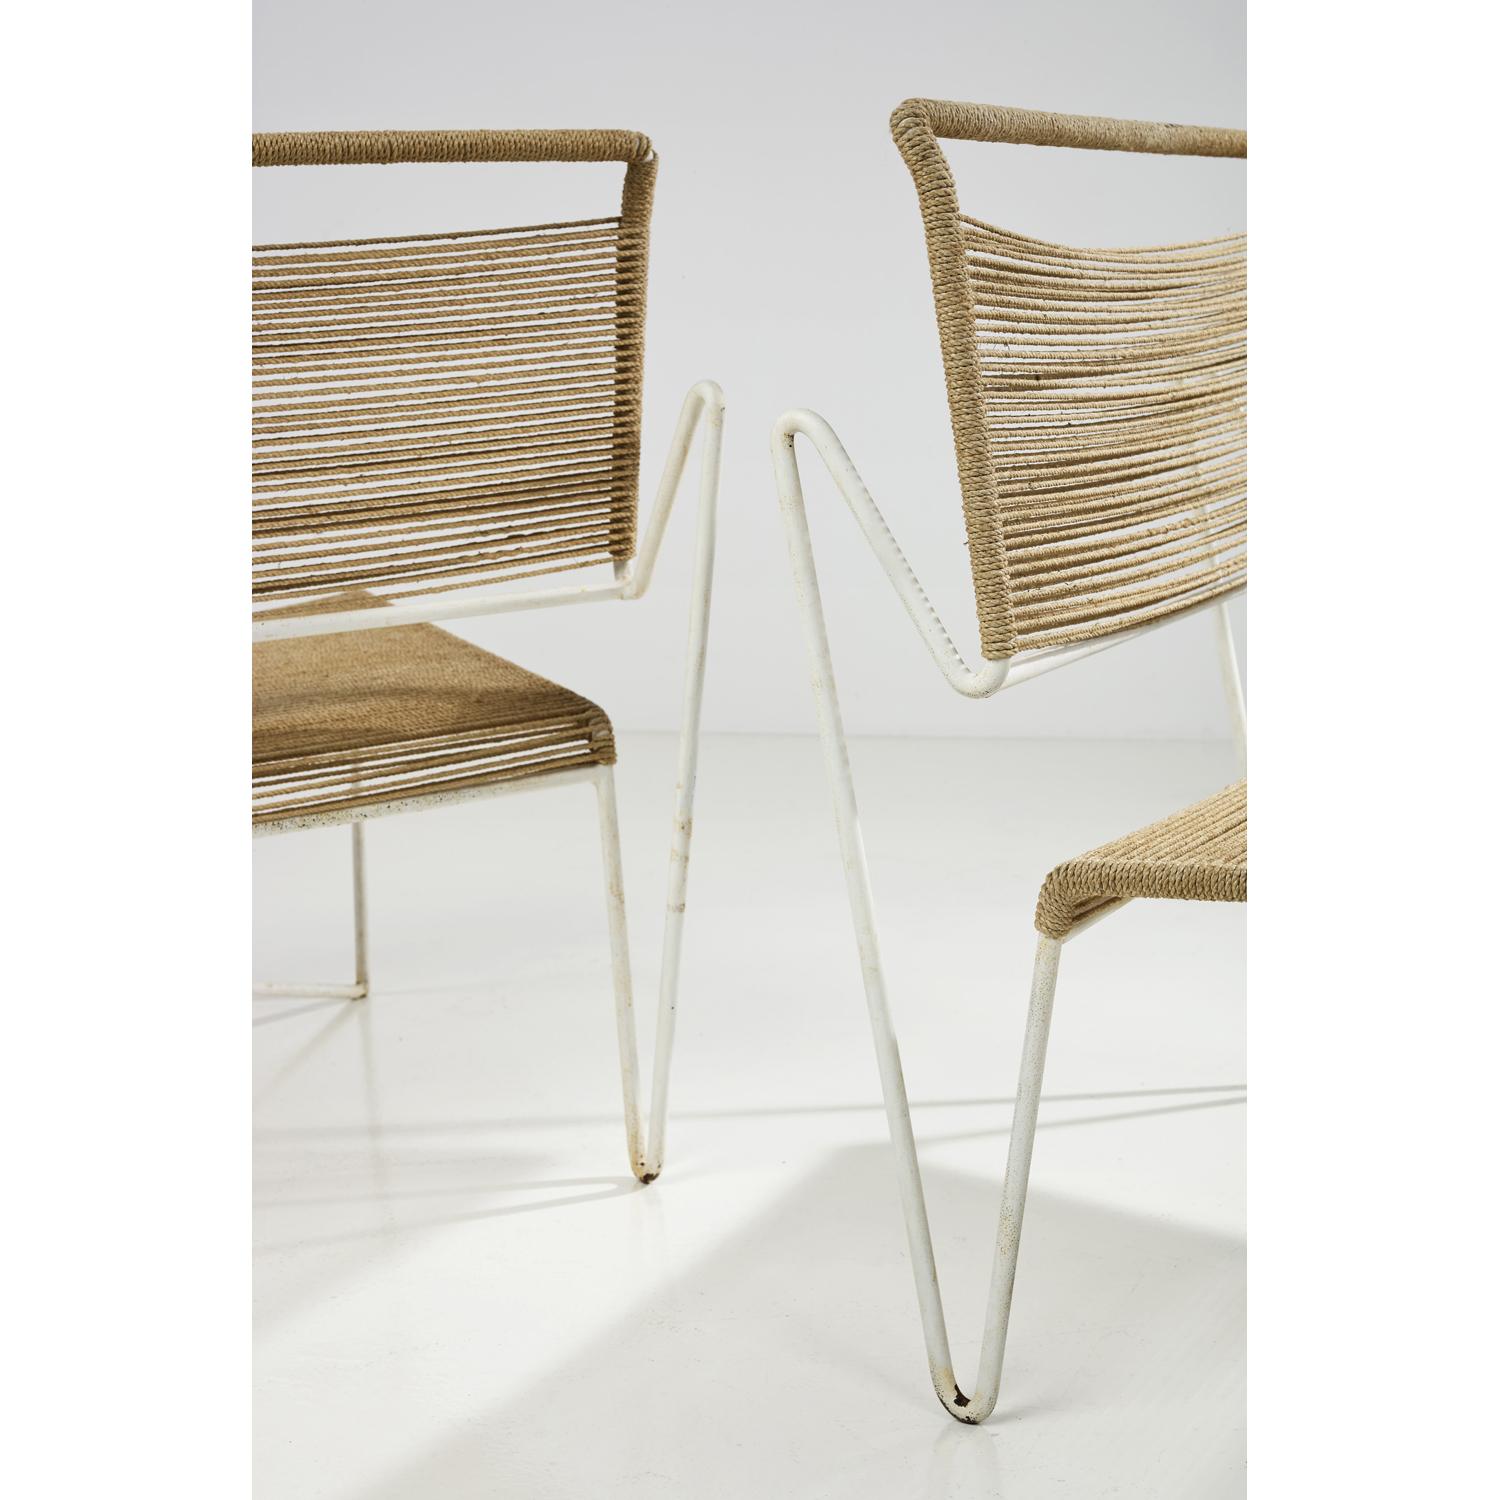 
Clara Porset (1895-1981) - Xavier Guerrero (1896-1974)
Paar Sessel
Seil und lackiertes Metall
Modell erstellt um 1950
Maße: H: 79 x B 70 x T 69 cm

Dieses Stuhlmodell gehört zur Auswahl des vom Museum of Modern Art, New York (MoMa) veranstalteten